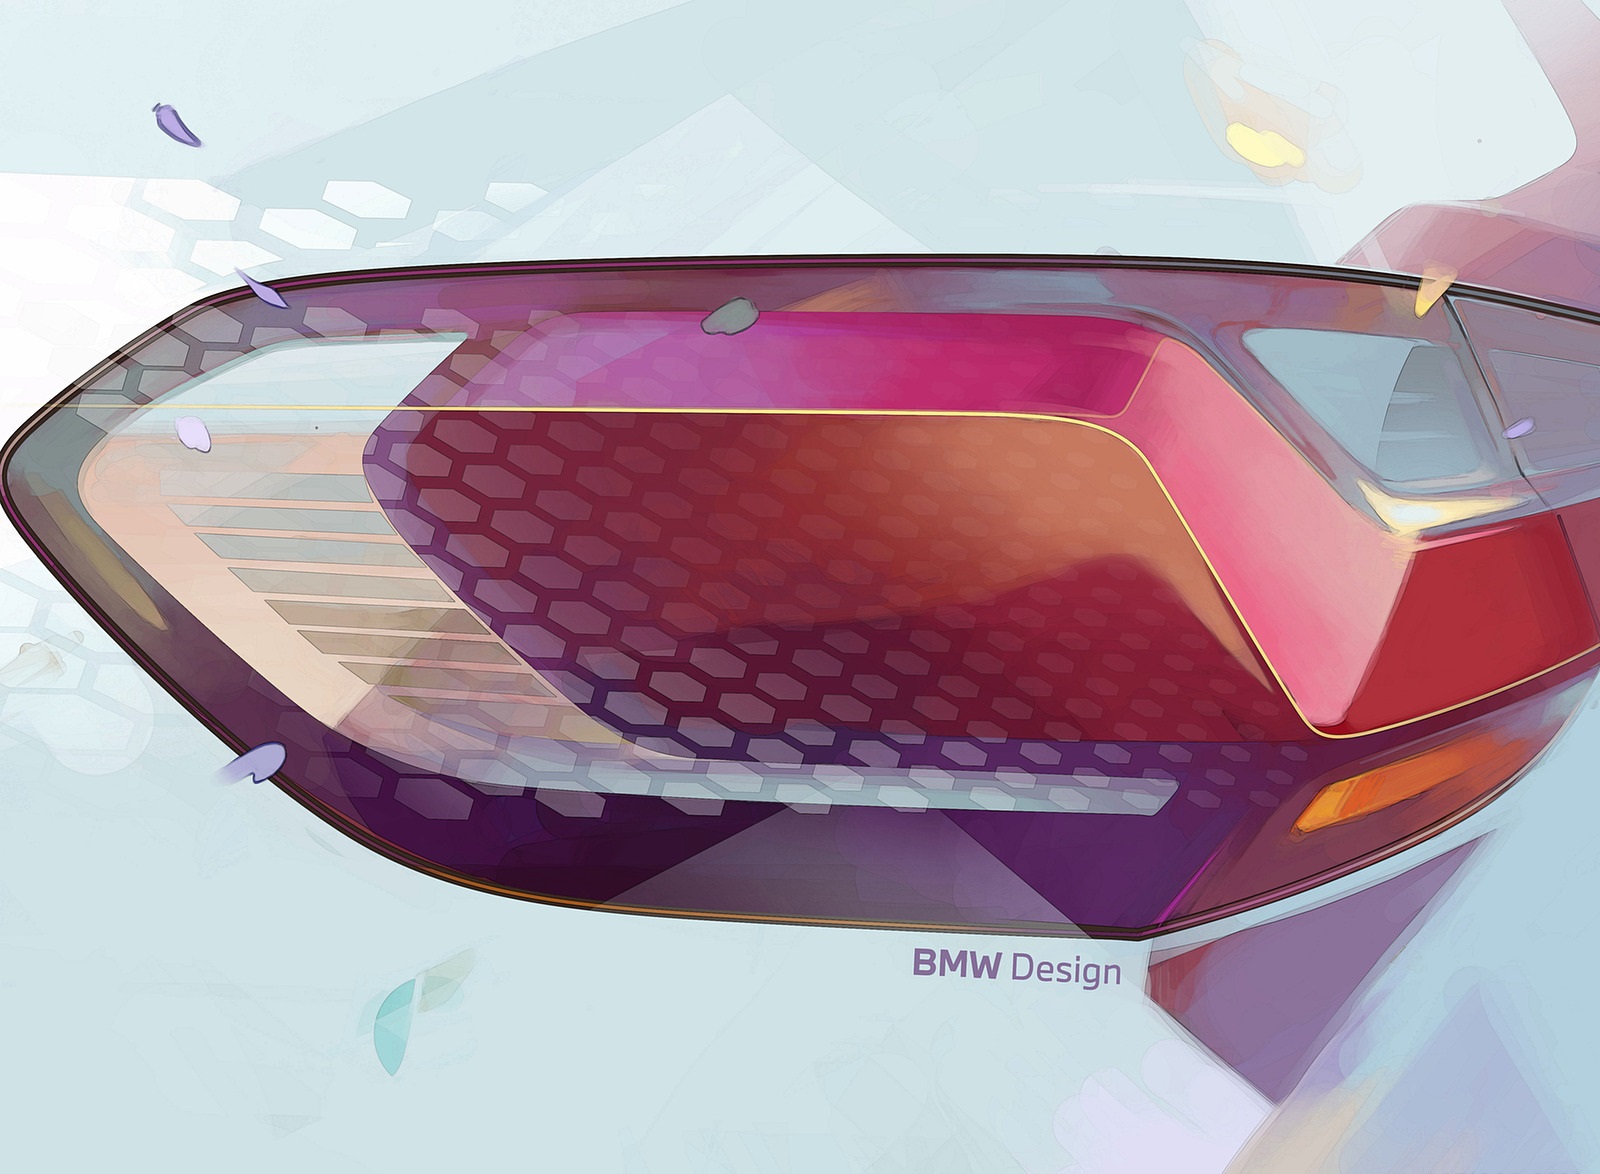 2022 BMW 223i Active Tourer Design Sketch Wallpapers #85 of 231